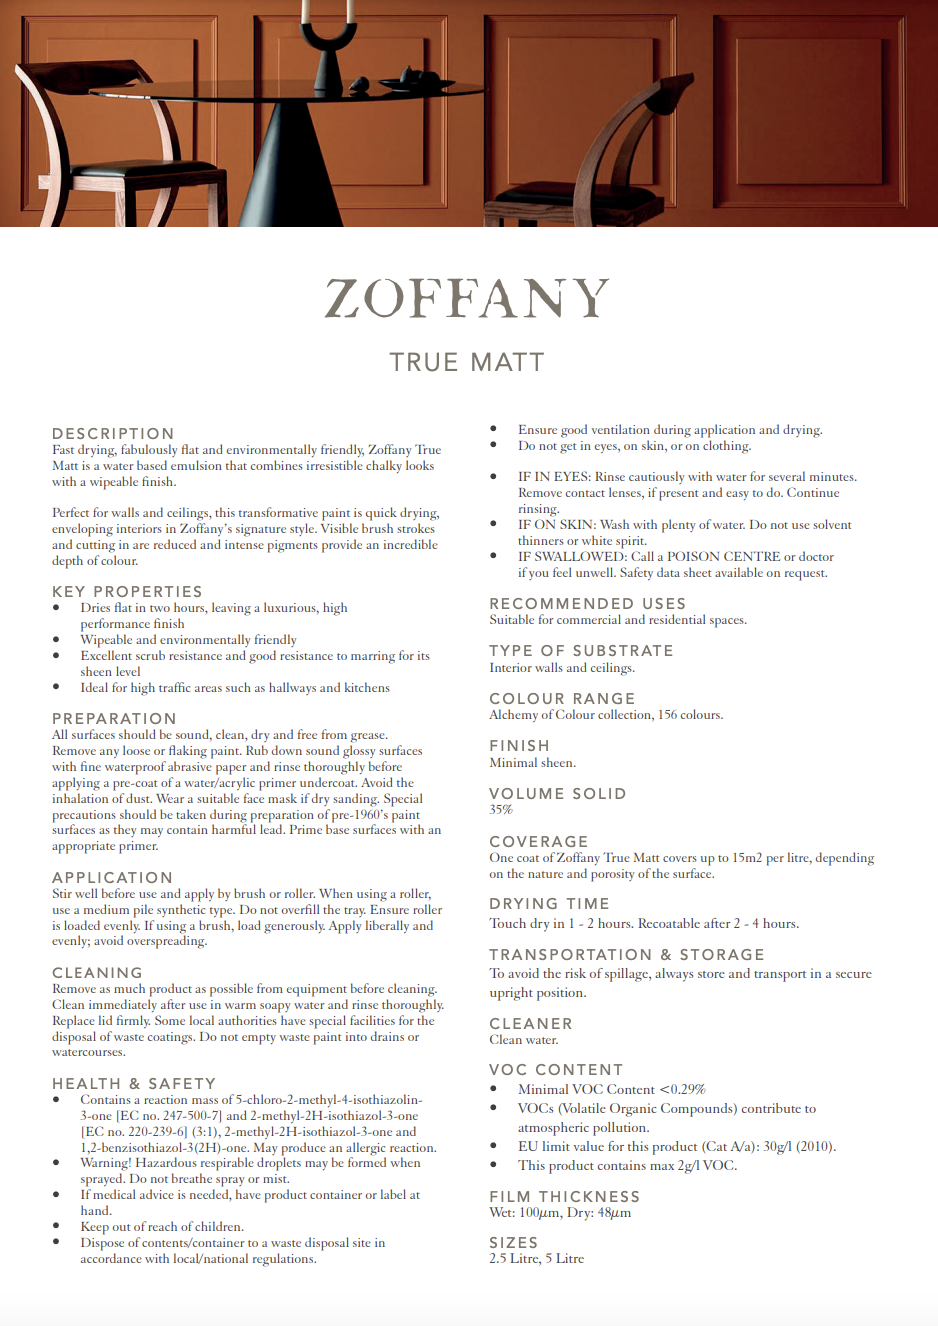 Zoffany Nocturnal True Matt Emulsion